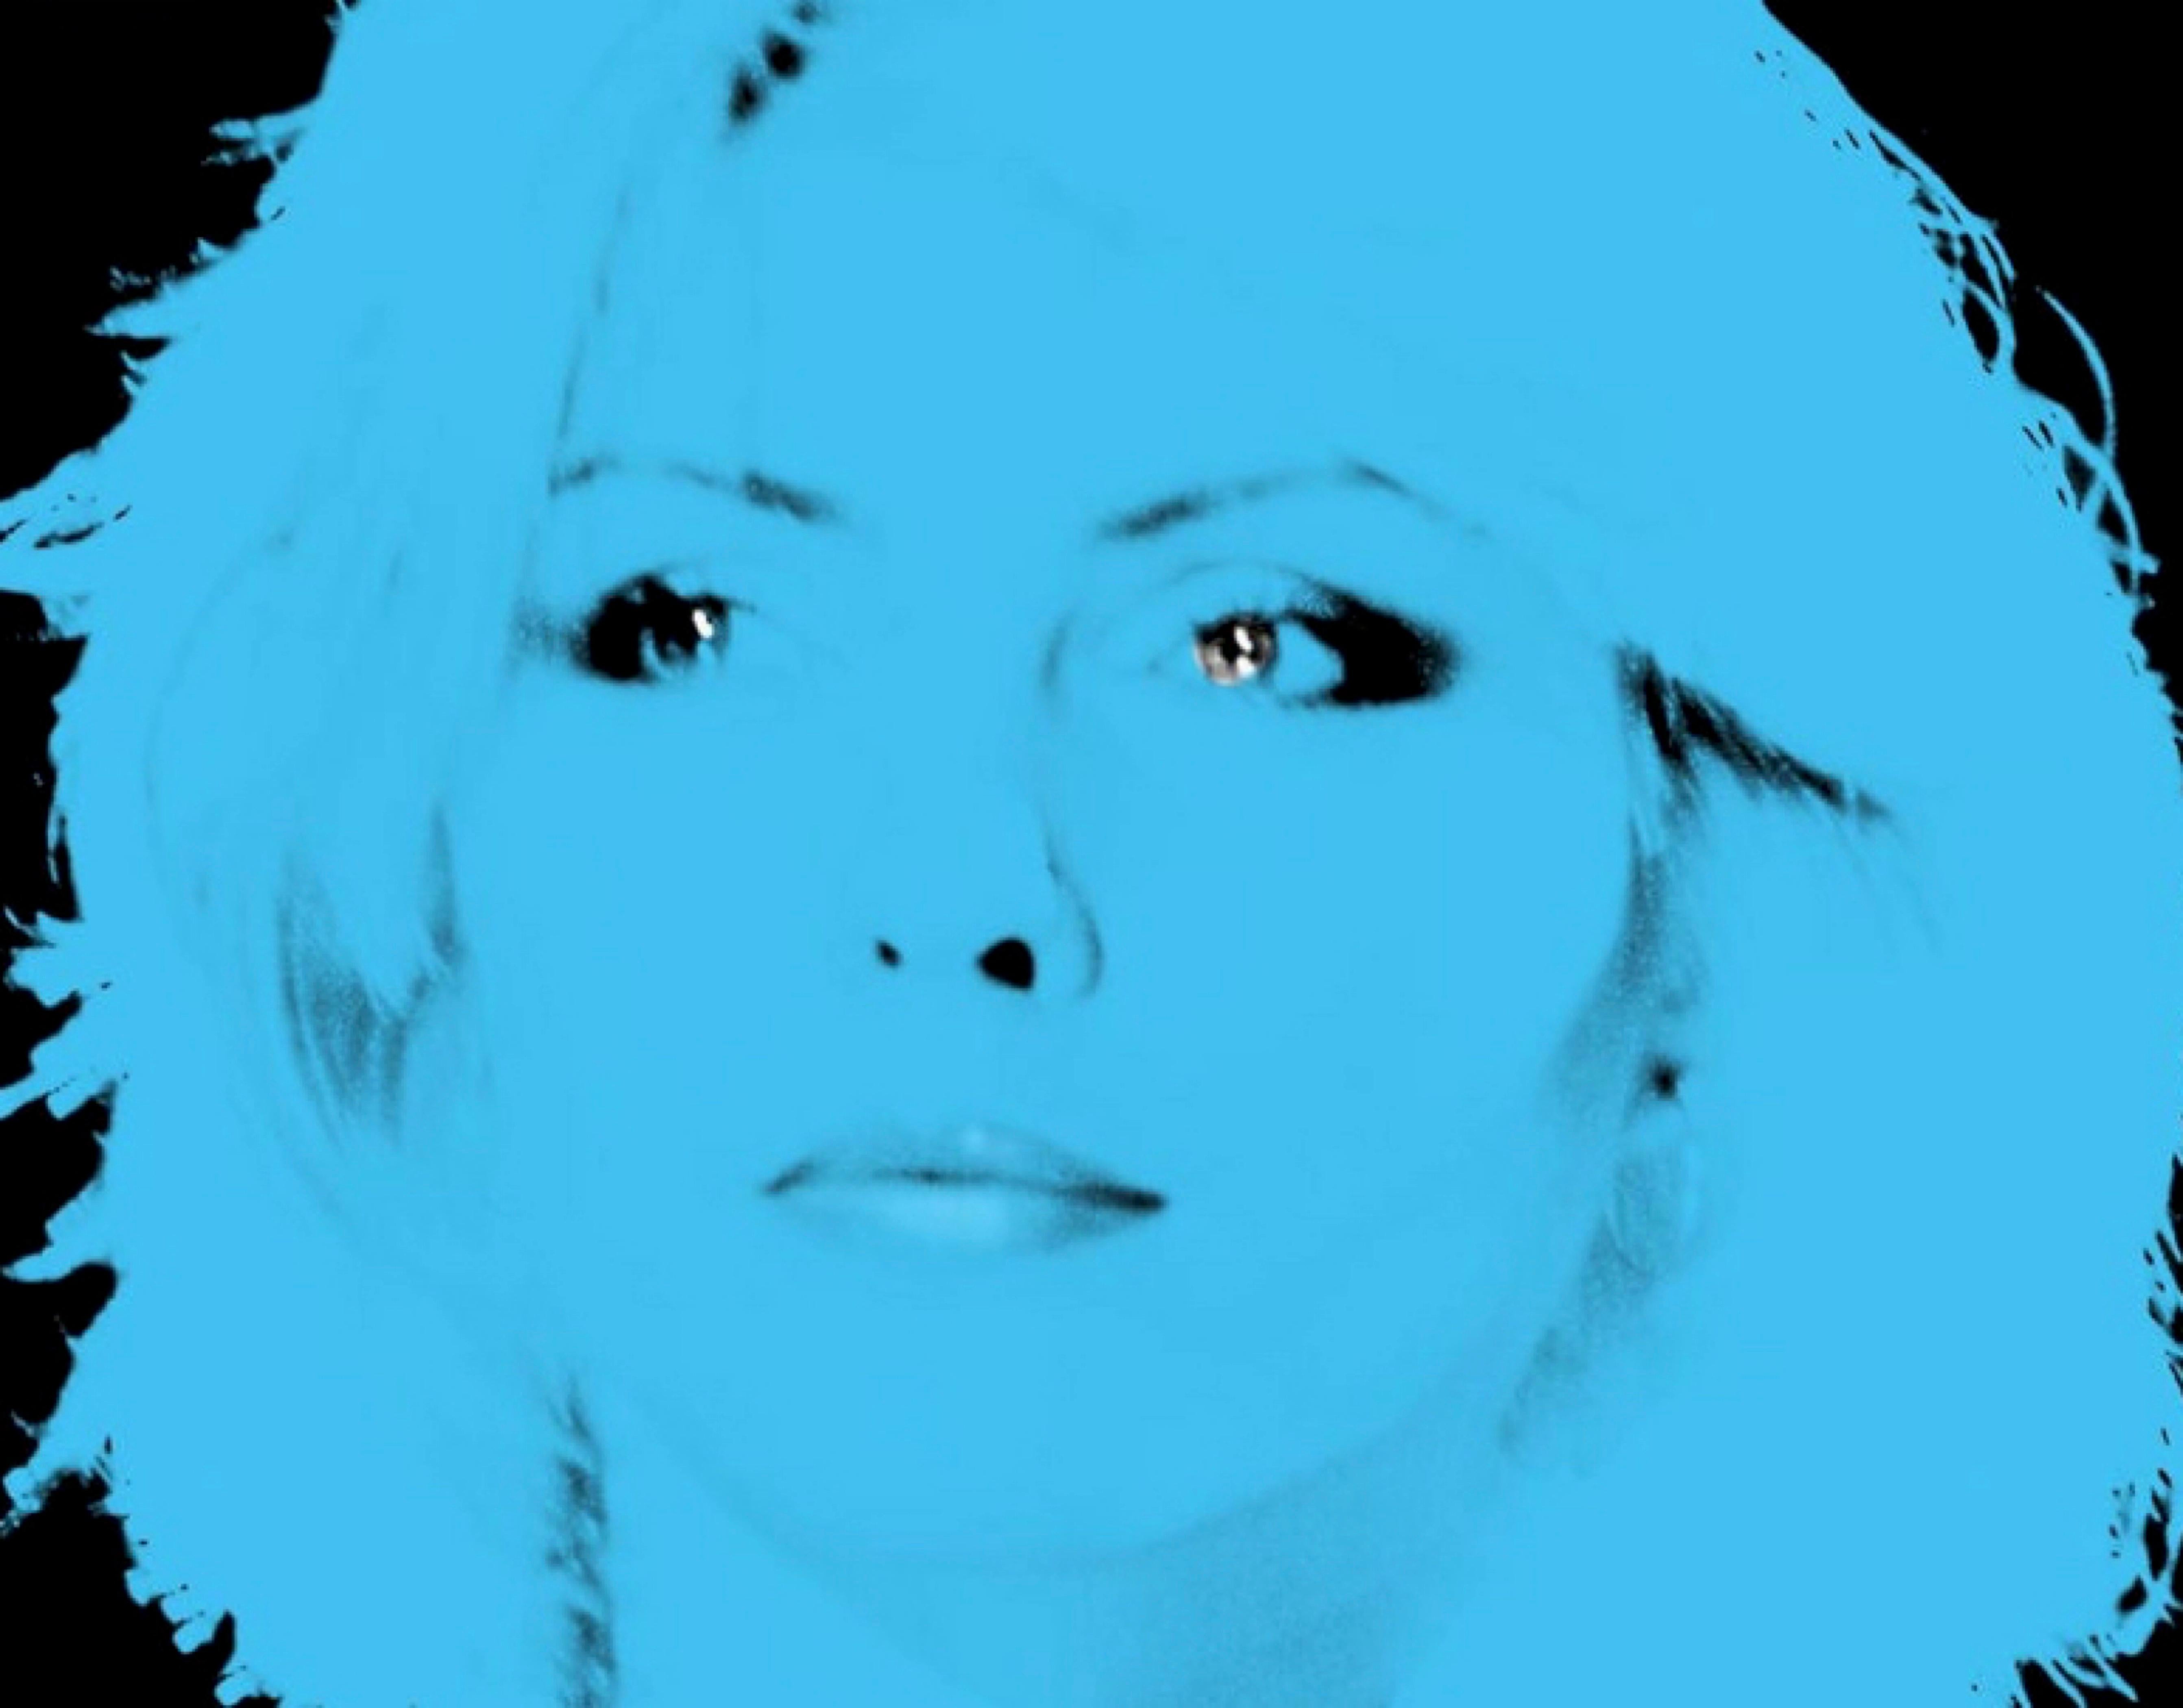 Blondie Blau

von BATIK

BATIK ist ein zunehmend gesuchter Pop-Künstler, der in London lebt und arbeitet. Der Künstler hält sich absichtlich bedeckt, da seine wahre Identität, sein Geschlecht und sein Alter nicht bekannt sind.

Er zieht es vor, die